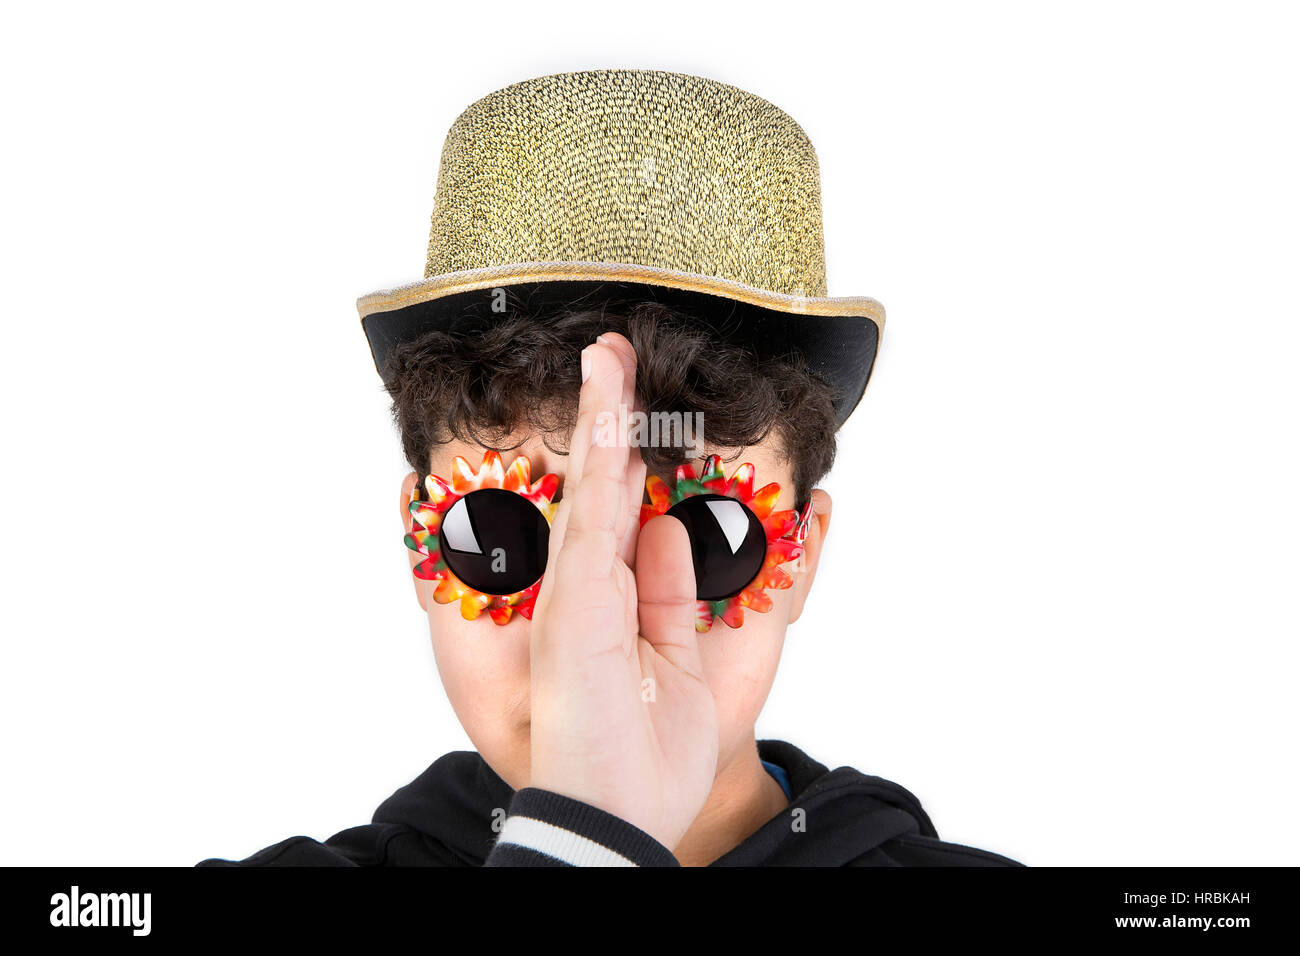 Junge mit Hut und Sonnenbrille in Studioumgebung. Stockfoto